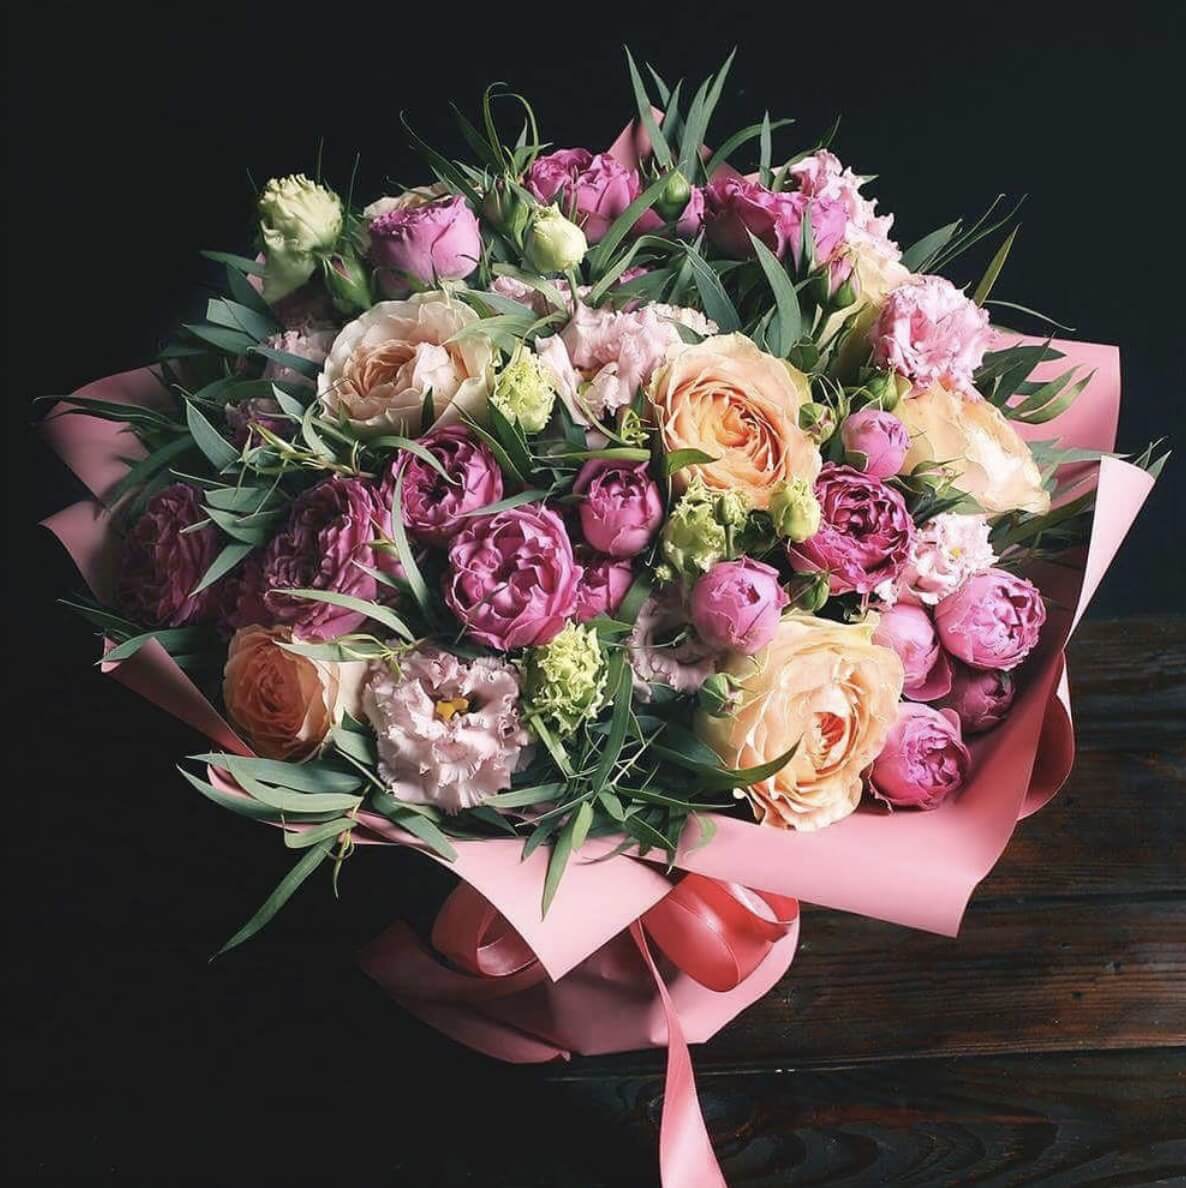 Купить букет пионовидных роз и эустом по доступной цене с доставкой в  Москве и области в интернет-магазине Город Букетов